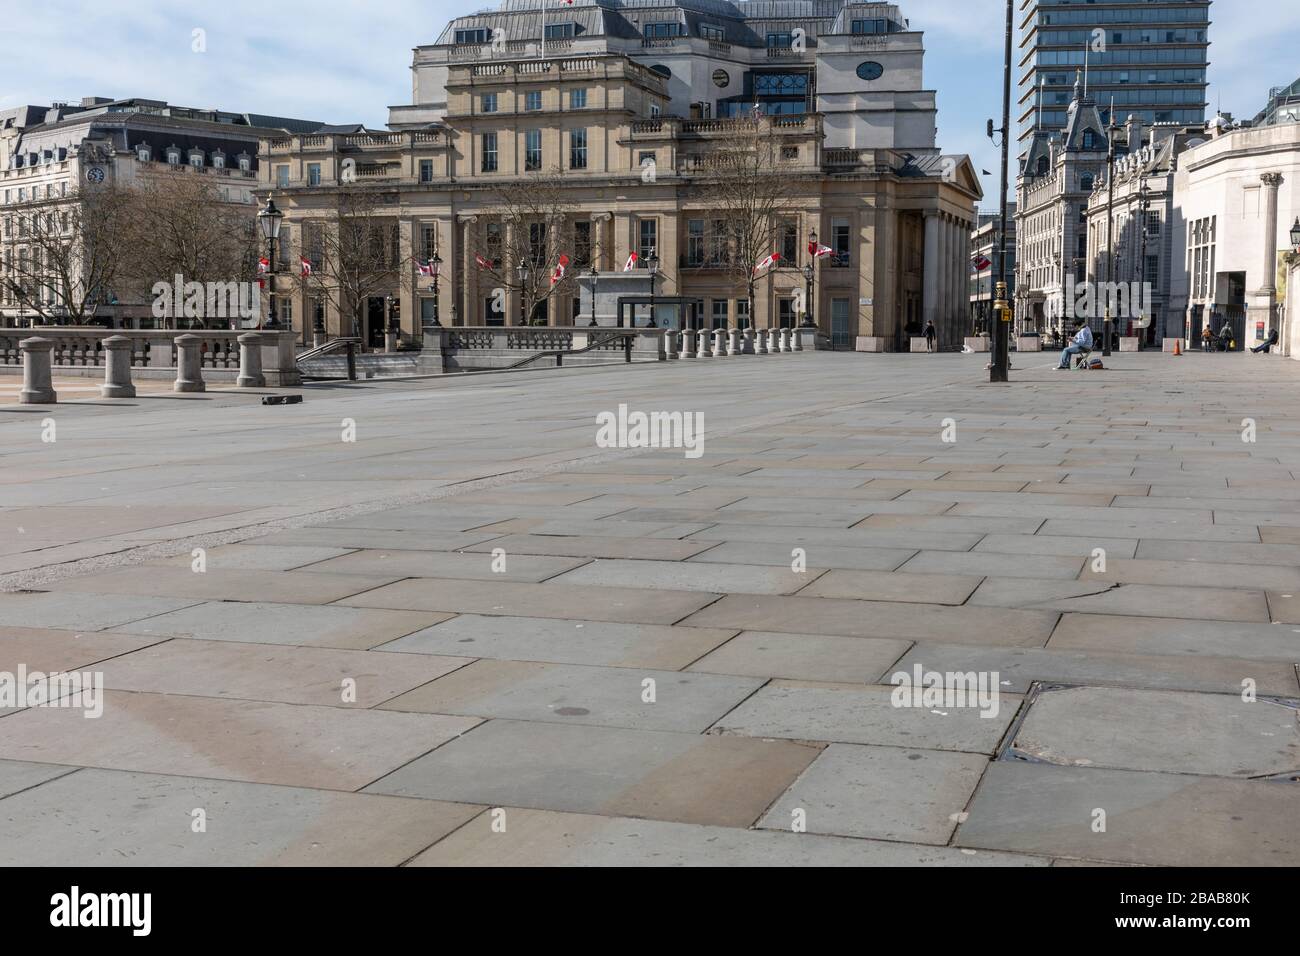 Londres - Angleterre - Trafalgar Square - 21032020 - les rues vides alors que le virus Corona frappe Londres forçant de nombreuses entreprises à fermer ou à fournir un service réduit - Photographe : Brian Duffy Banque D'Images